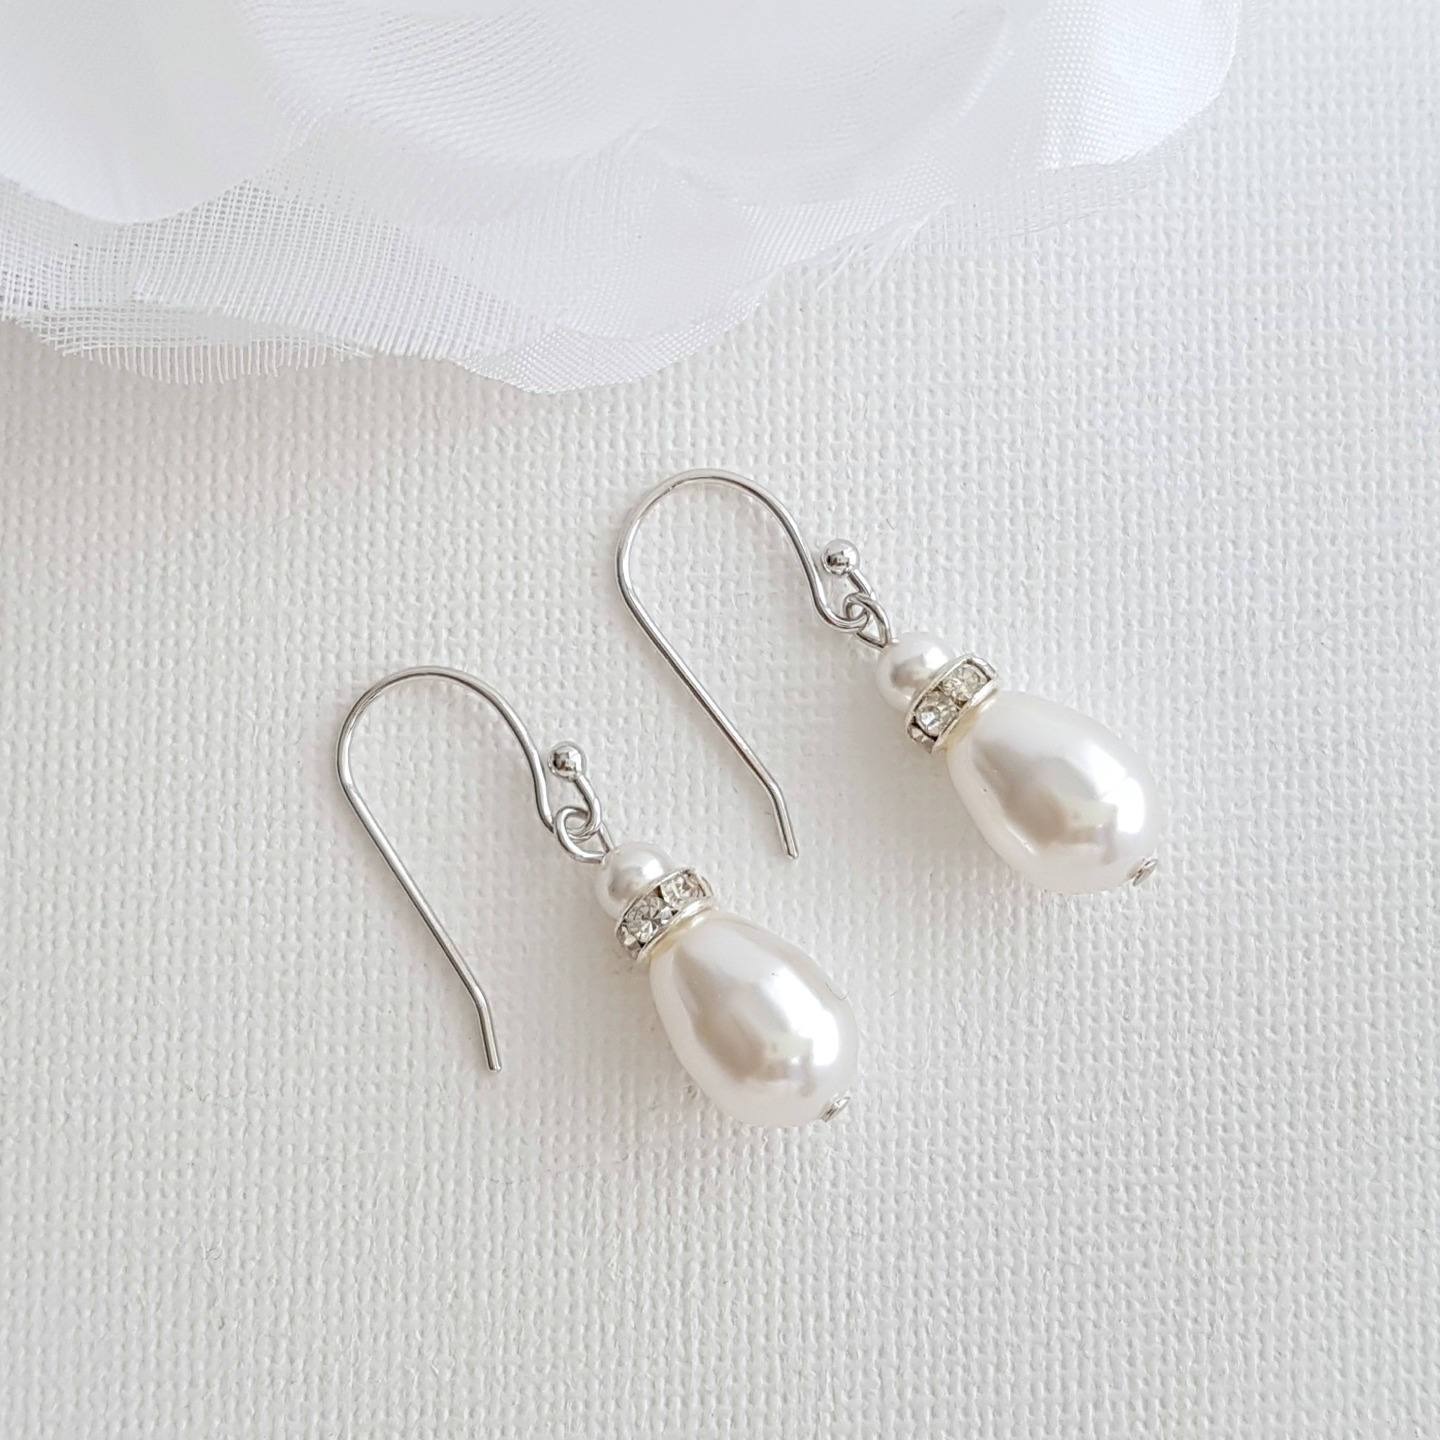 Simple Drop Earrings in Rose Gold for Weddings- June - PoetryDesigns